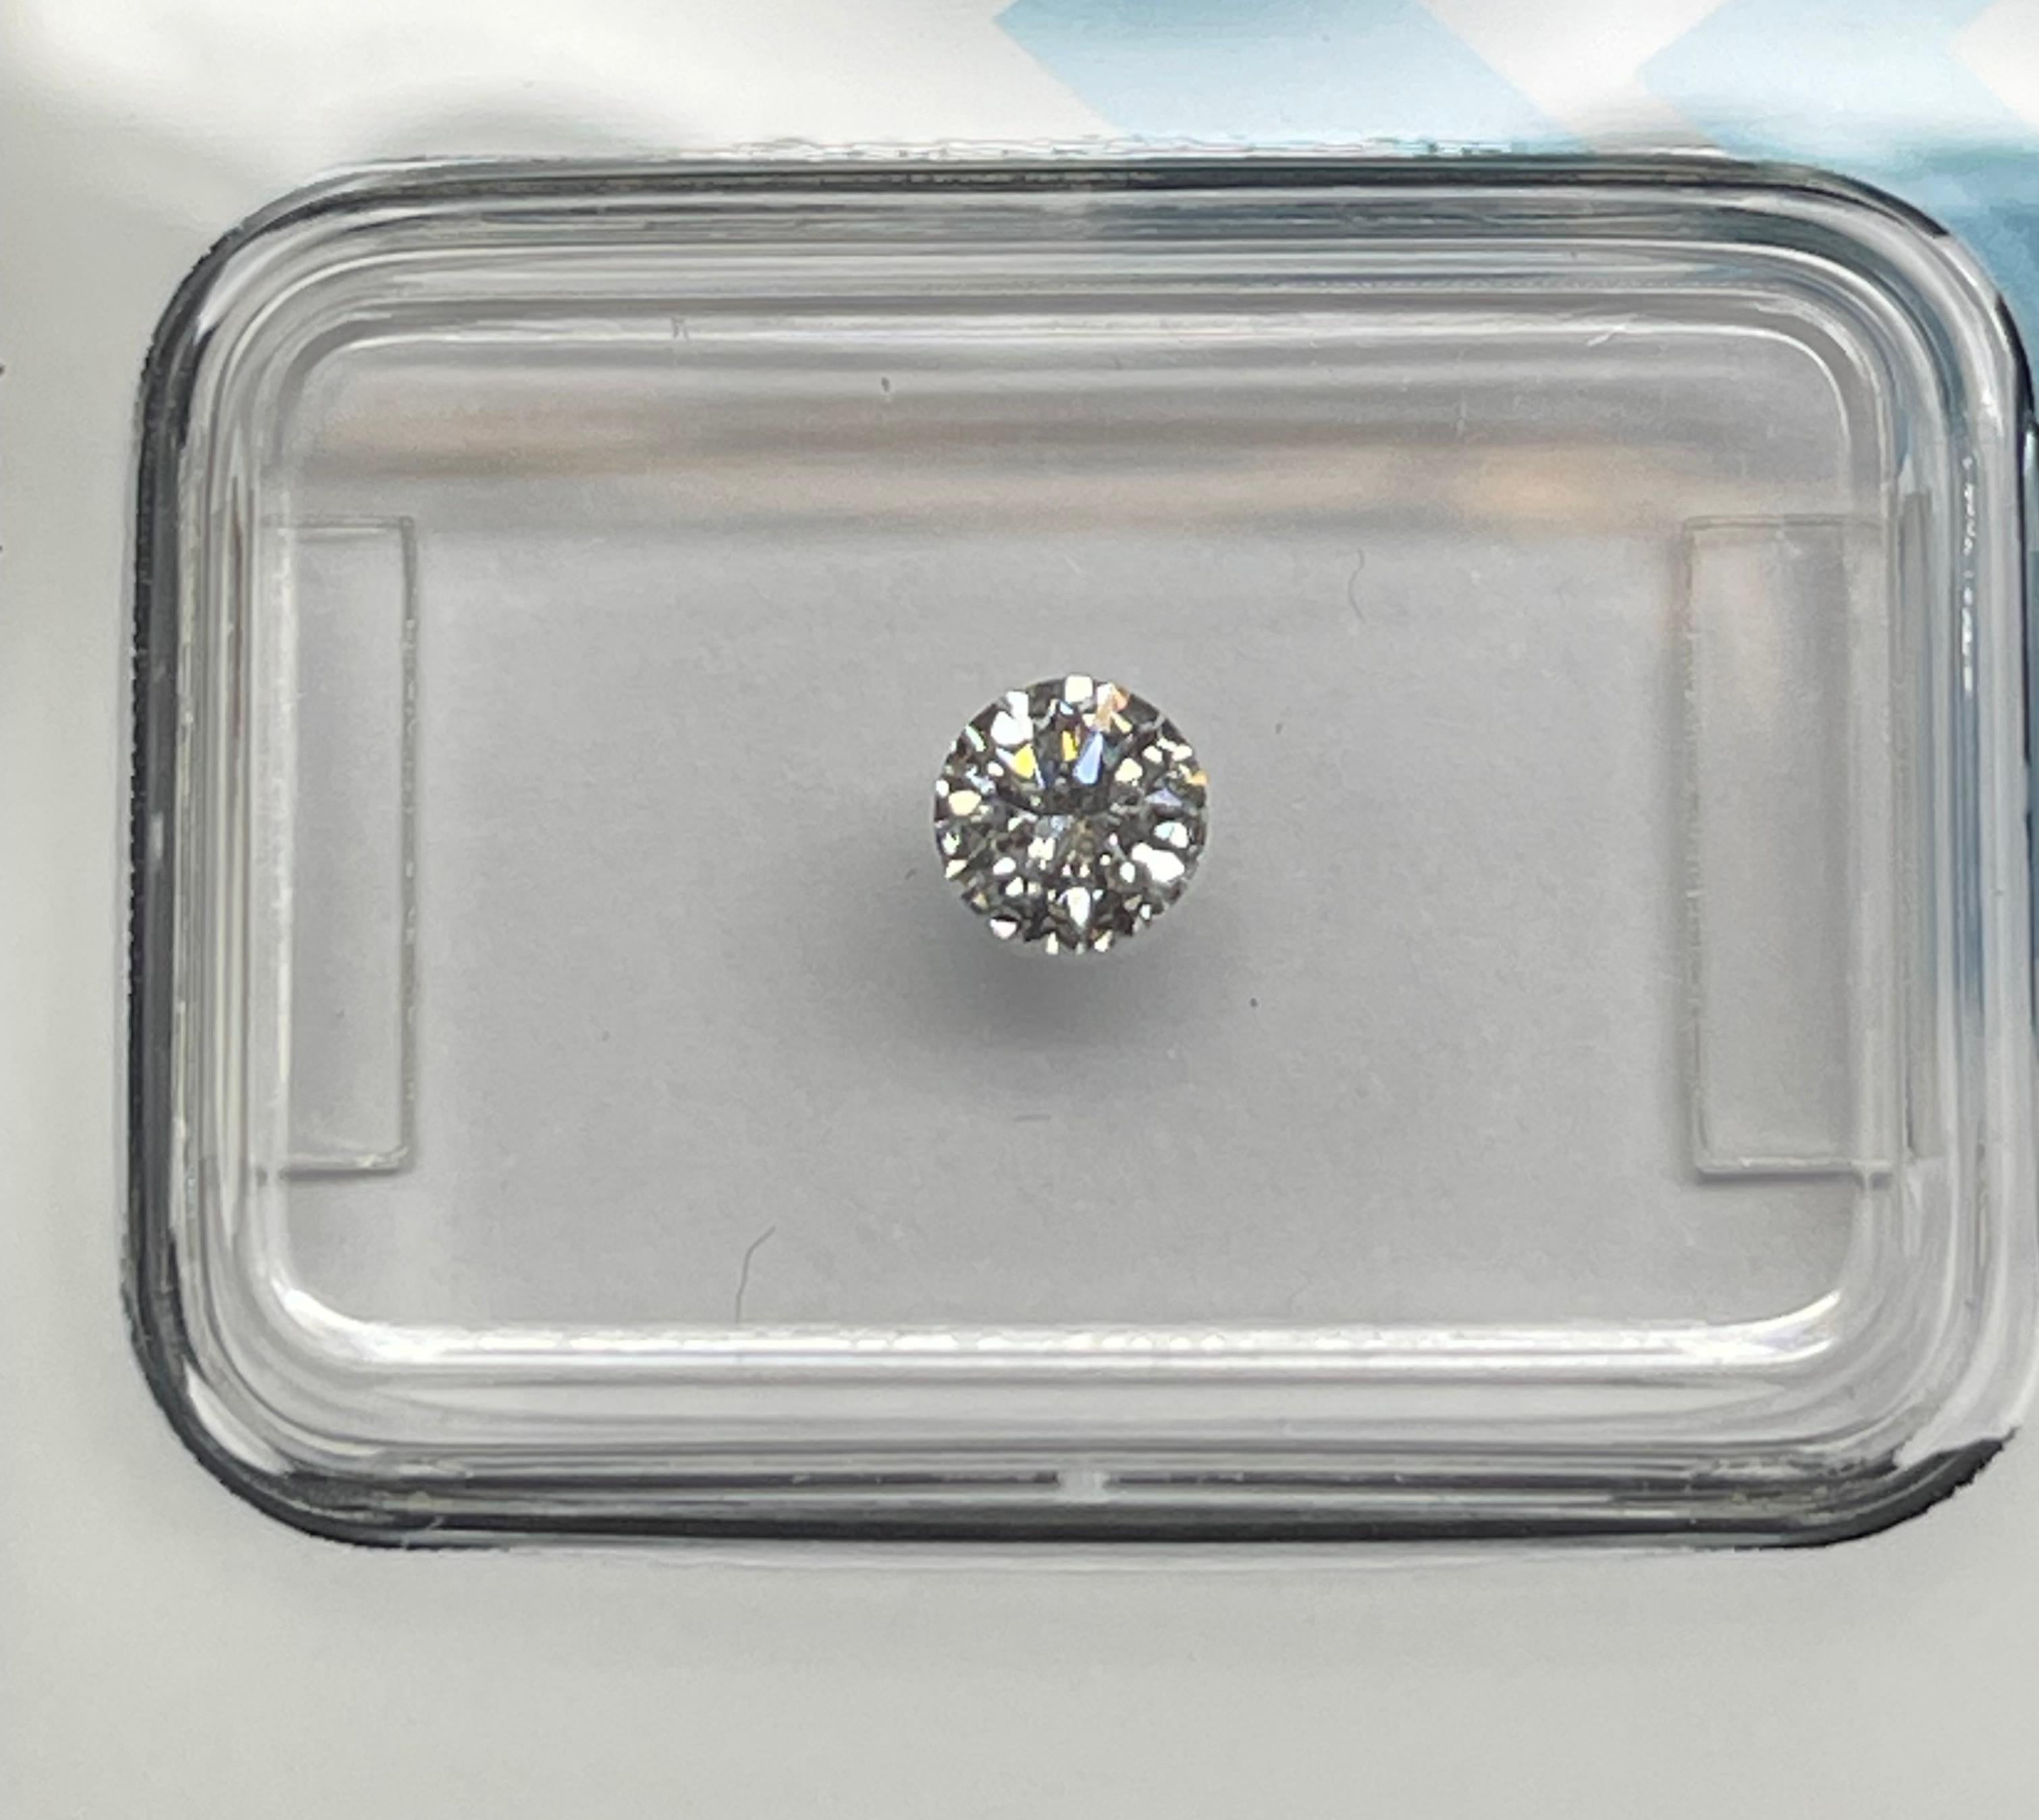 Natural Diamond graded by IGI.

Shape: Round Brilliant
Weight: 0.26 CT
Color: D
Clarity: VS2
Cut: Excellent
Polish: Excellent
Symmetry: Excellent
Fluorescence: None
Laser inscription : IGI 630434193